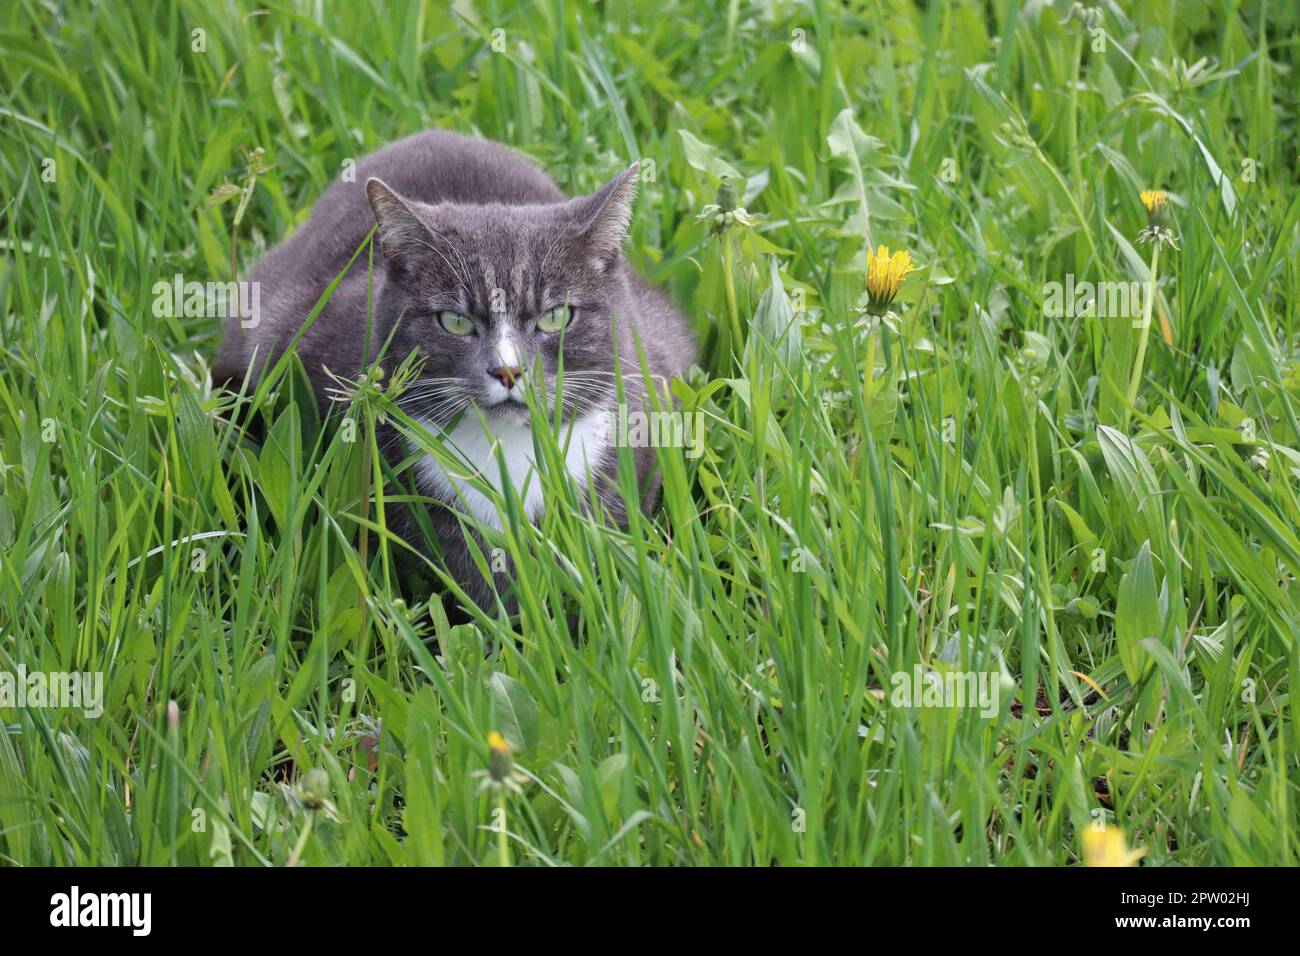 Gato con ojos verdes en la hierba verde Foto de stock